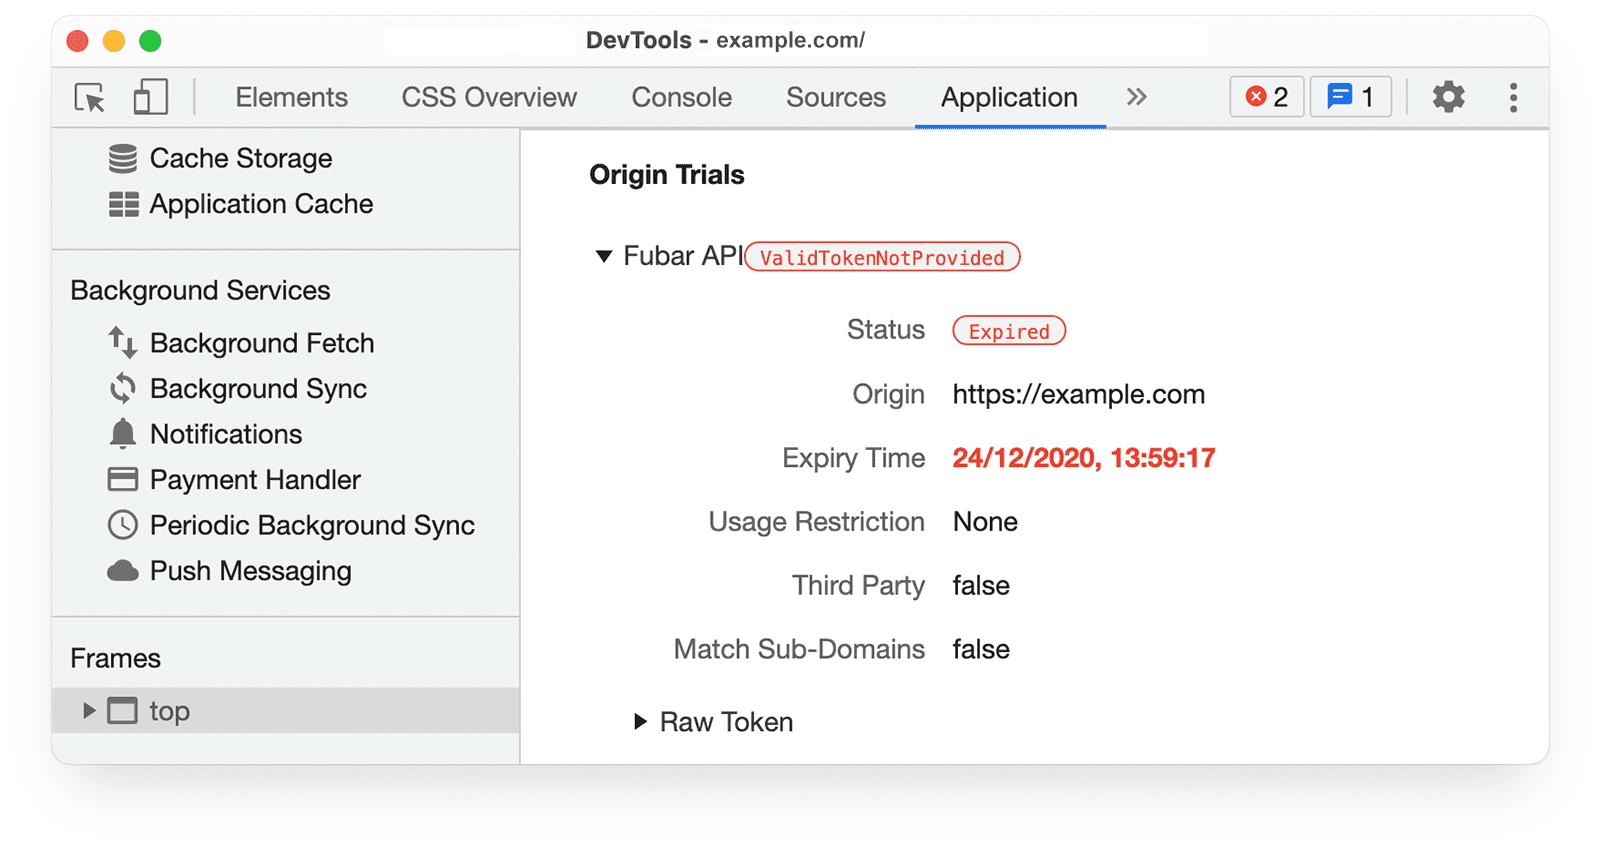 DevTools Chrome 
informasi uji coba origin di panel Application, yang memperjelas Status: Success.